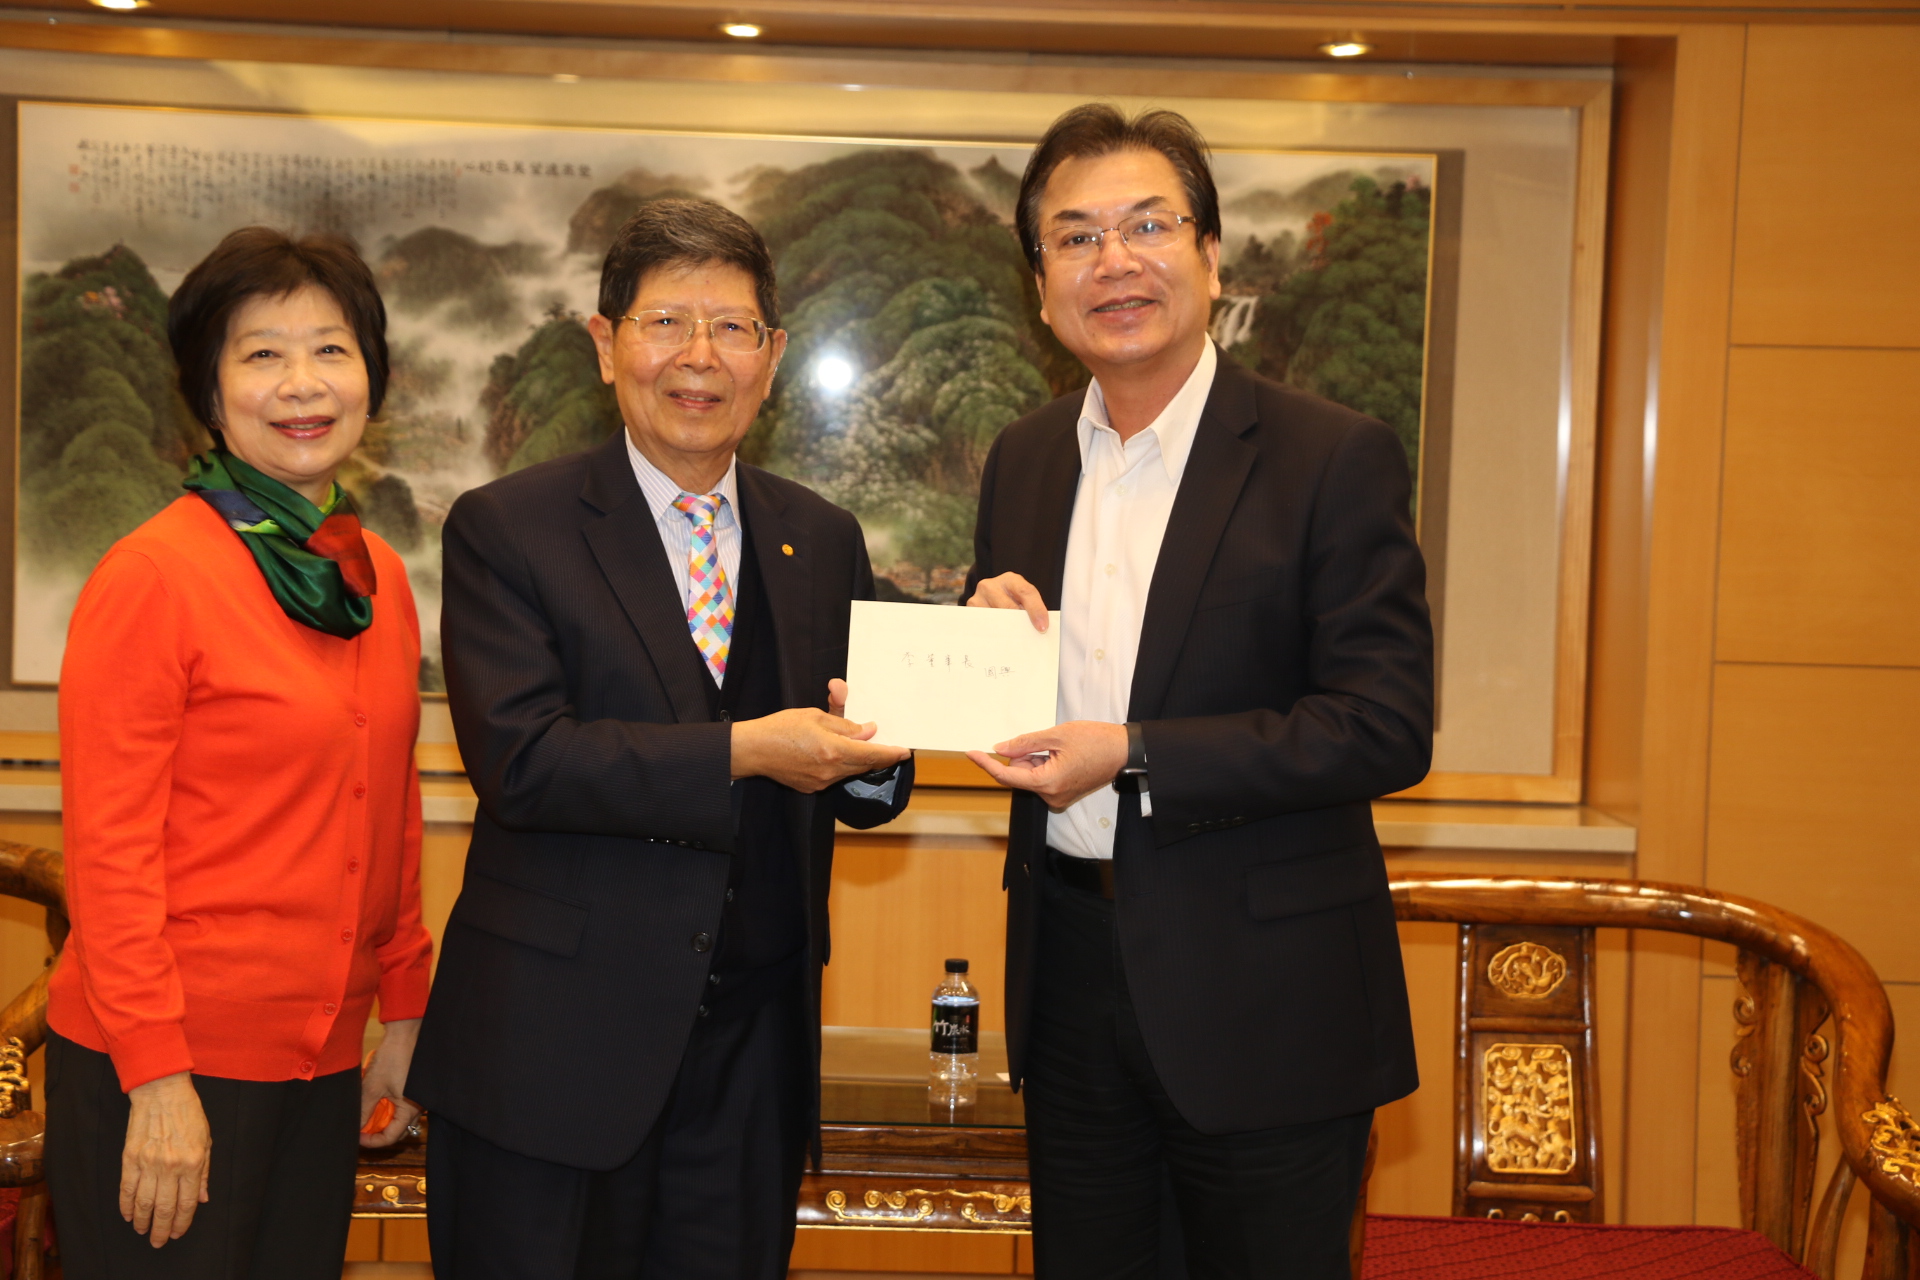 劉和然副市長代表侯友宜市長致贈李國興前社長生日卡片  感謝他長年持續的愛心  並祝生日快樂